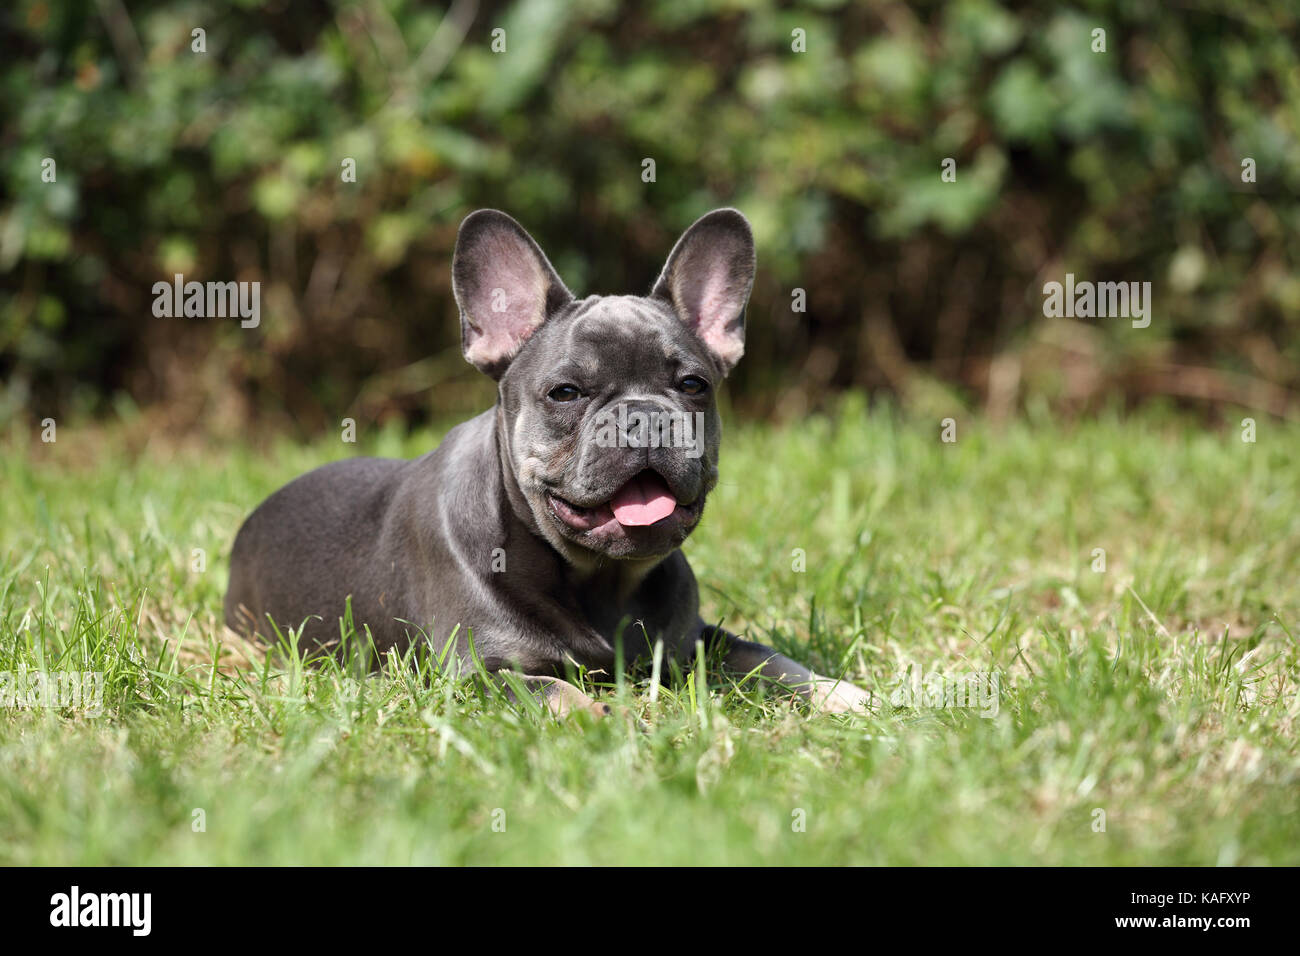 Bulldog Francés. Cachorro macho tumbado en la hierba mientras jadeando. Alemania Foto de stock